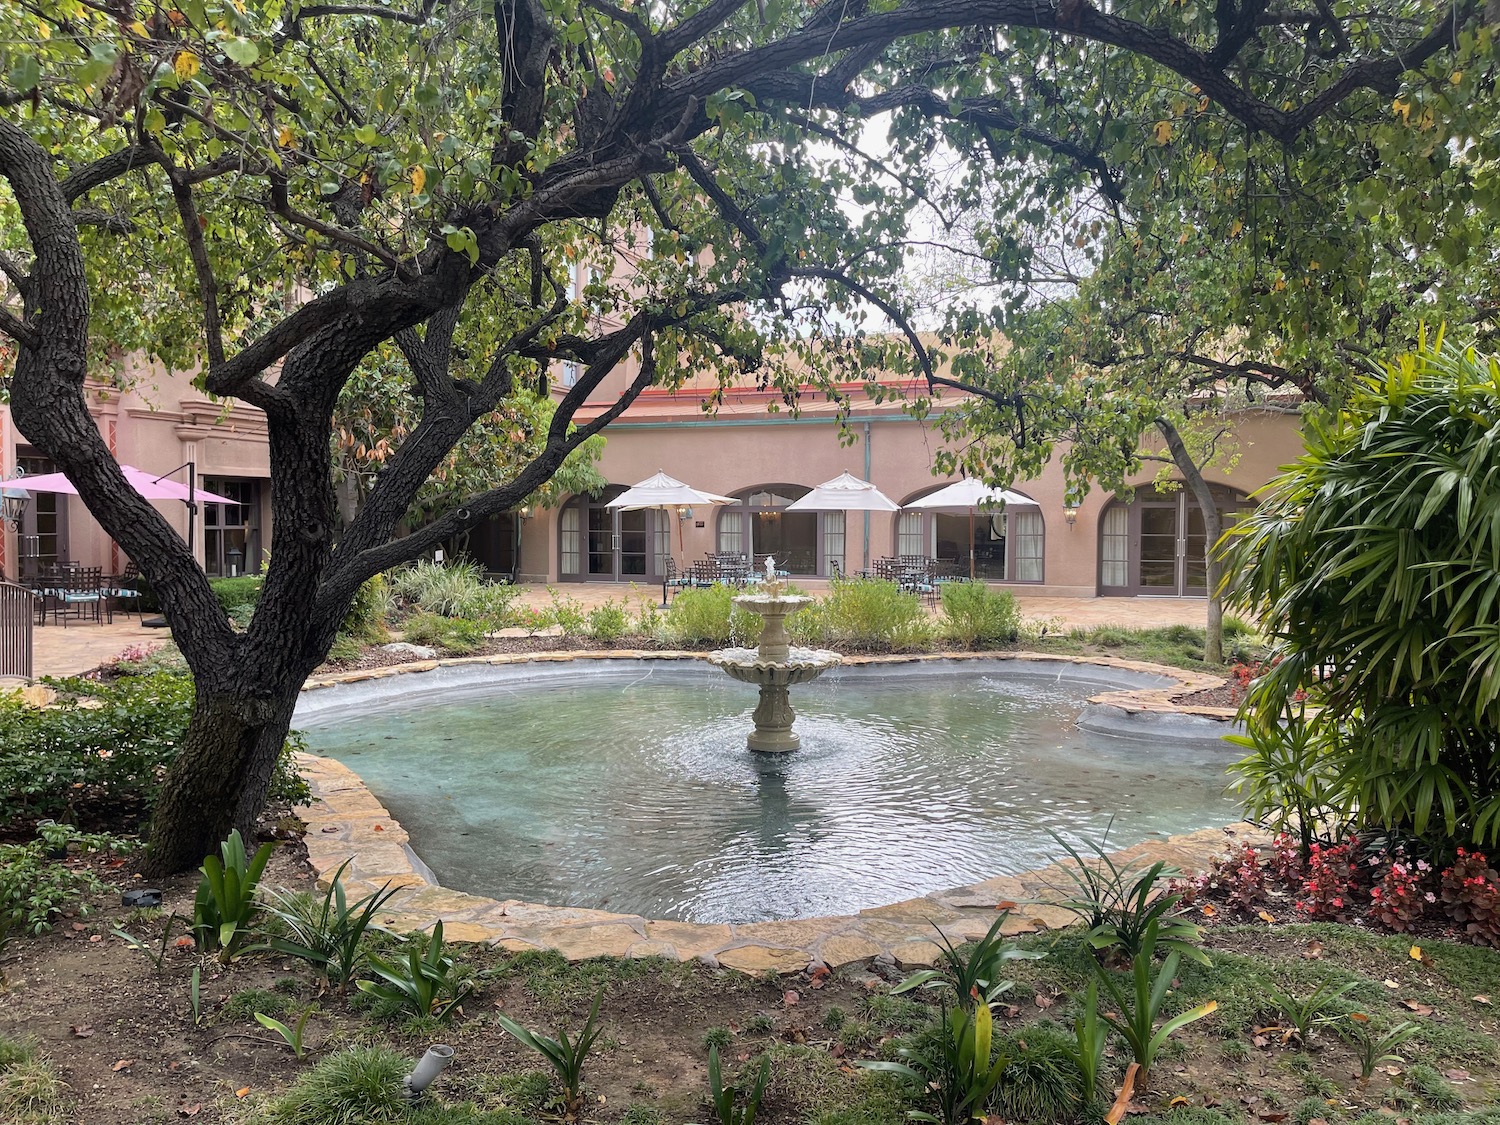 a fountain in a courtyard